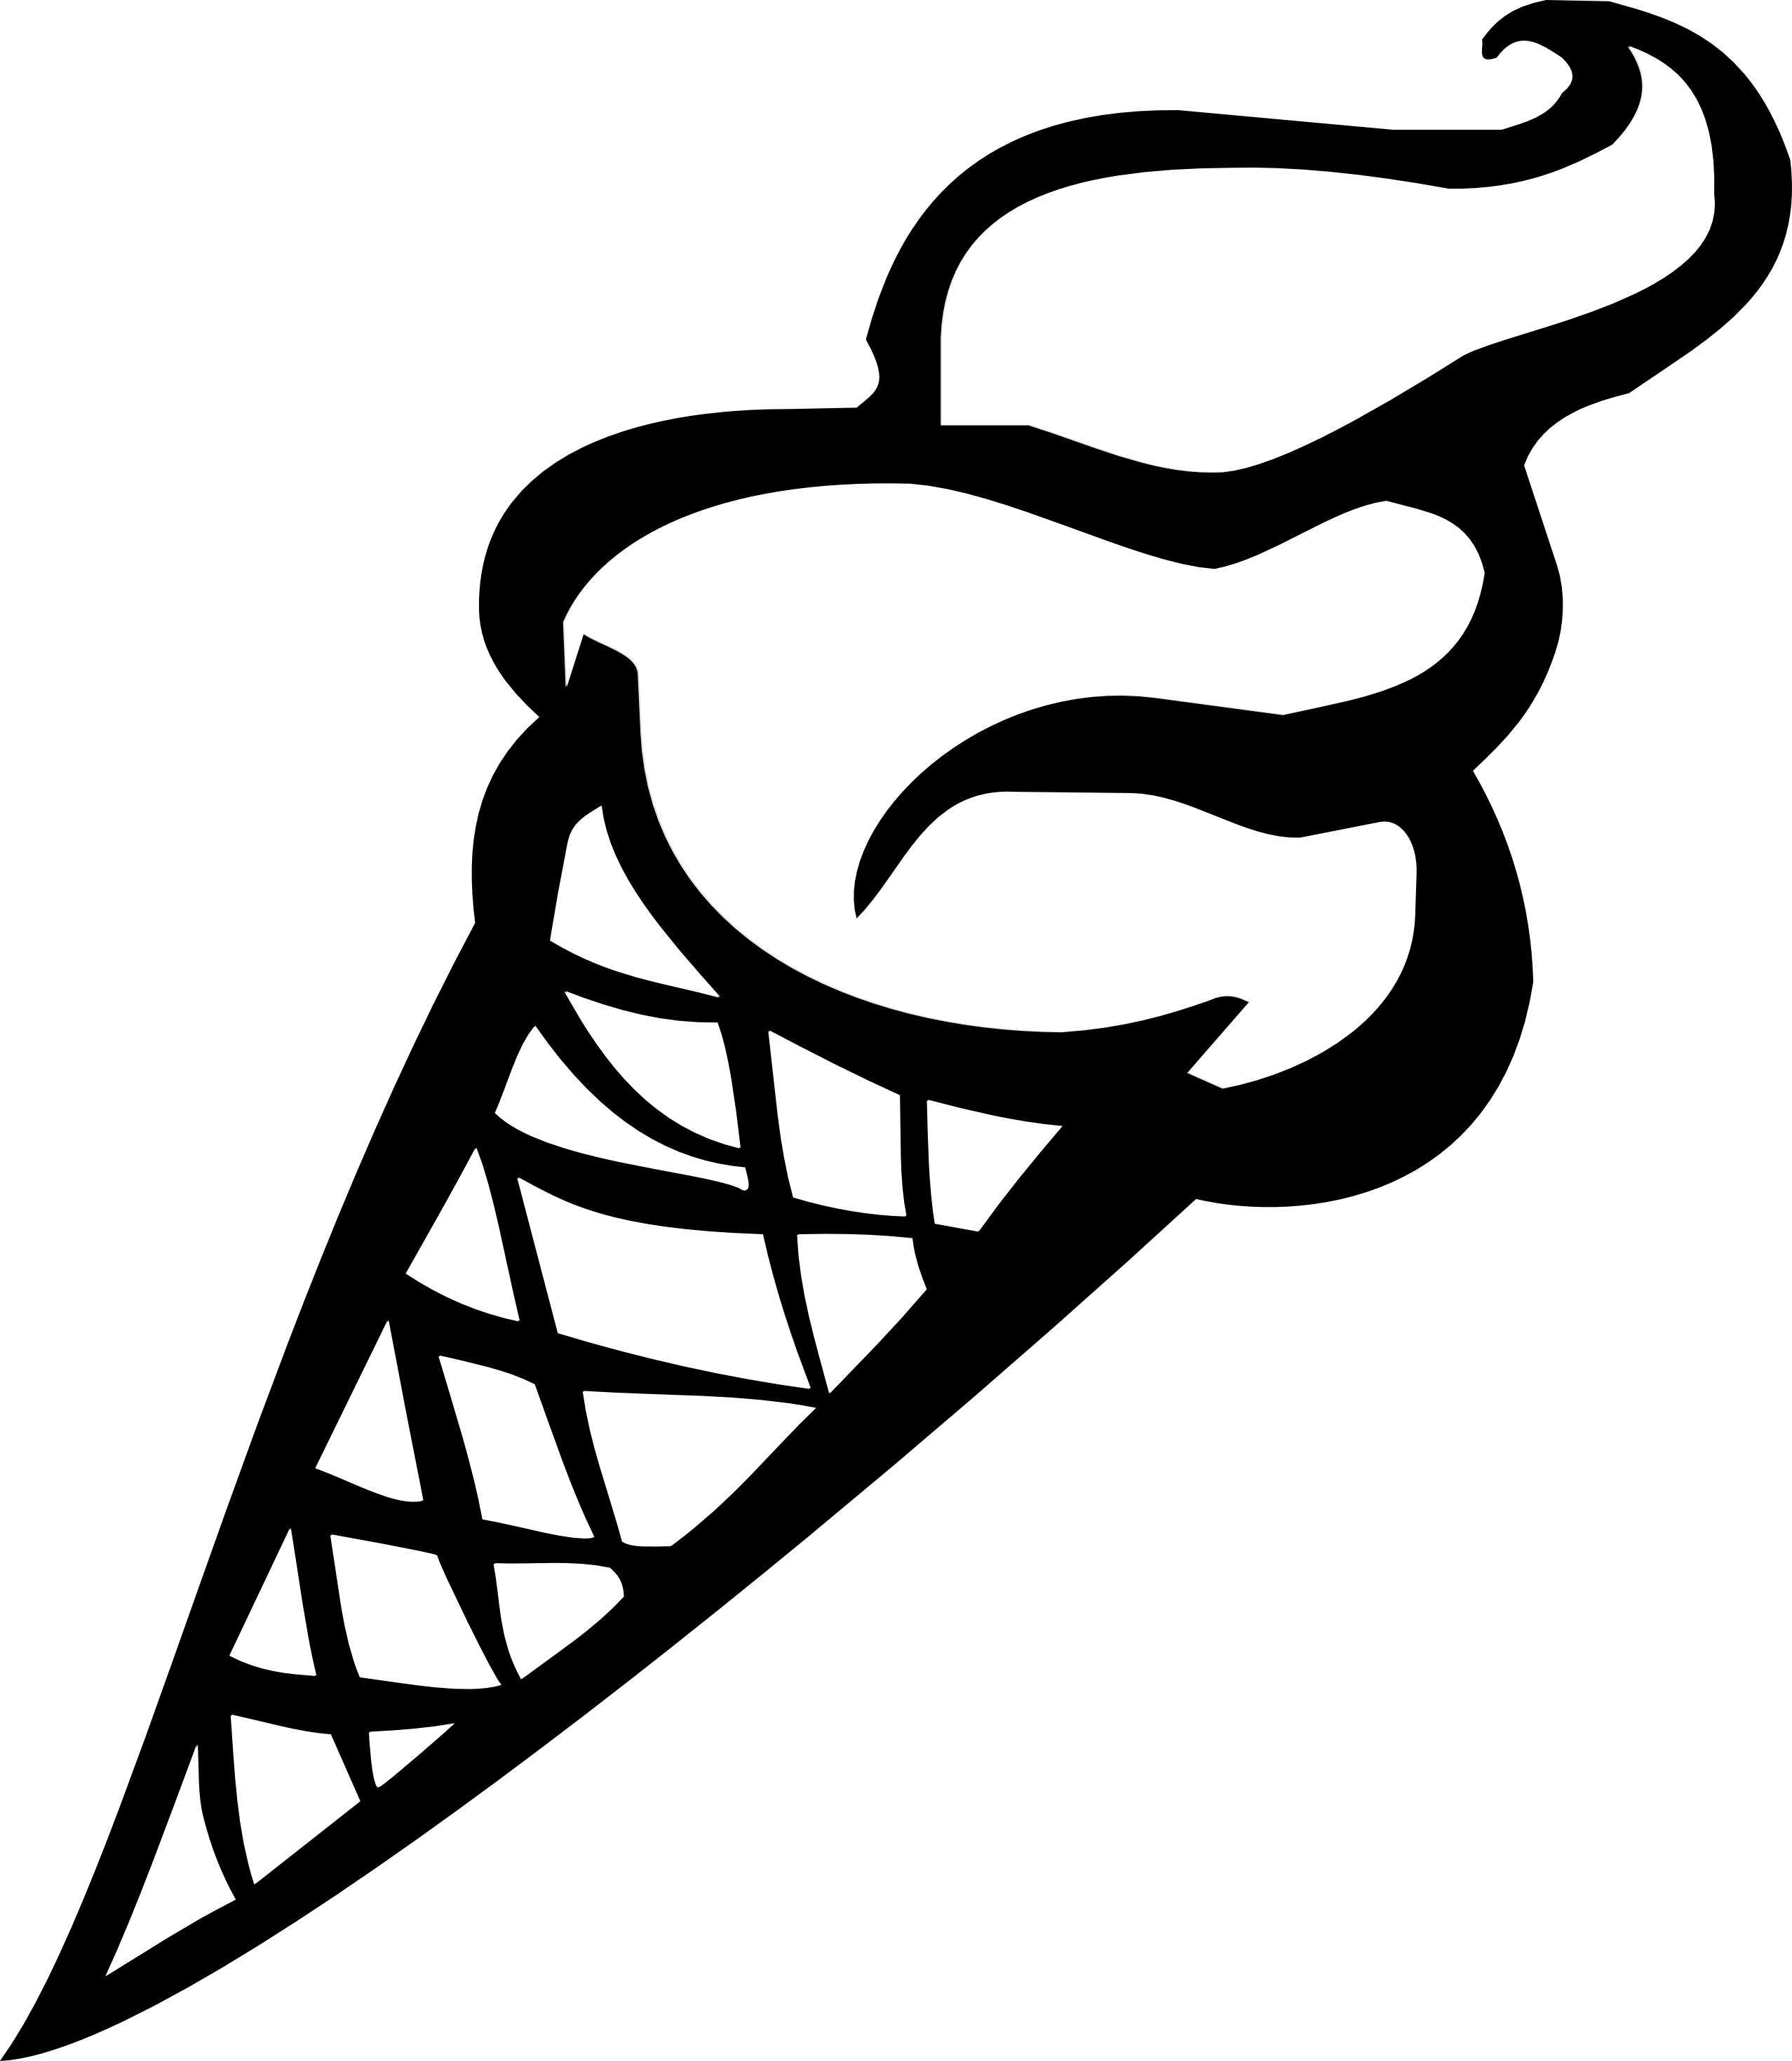 Ice cream sundae clipart